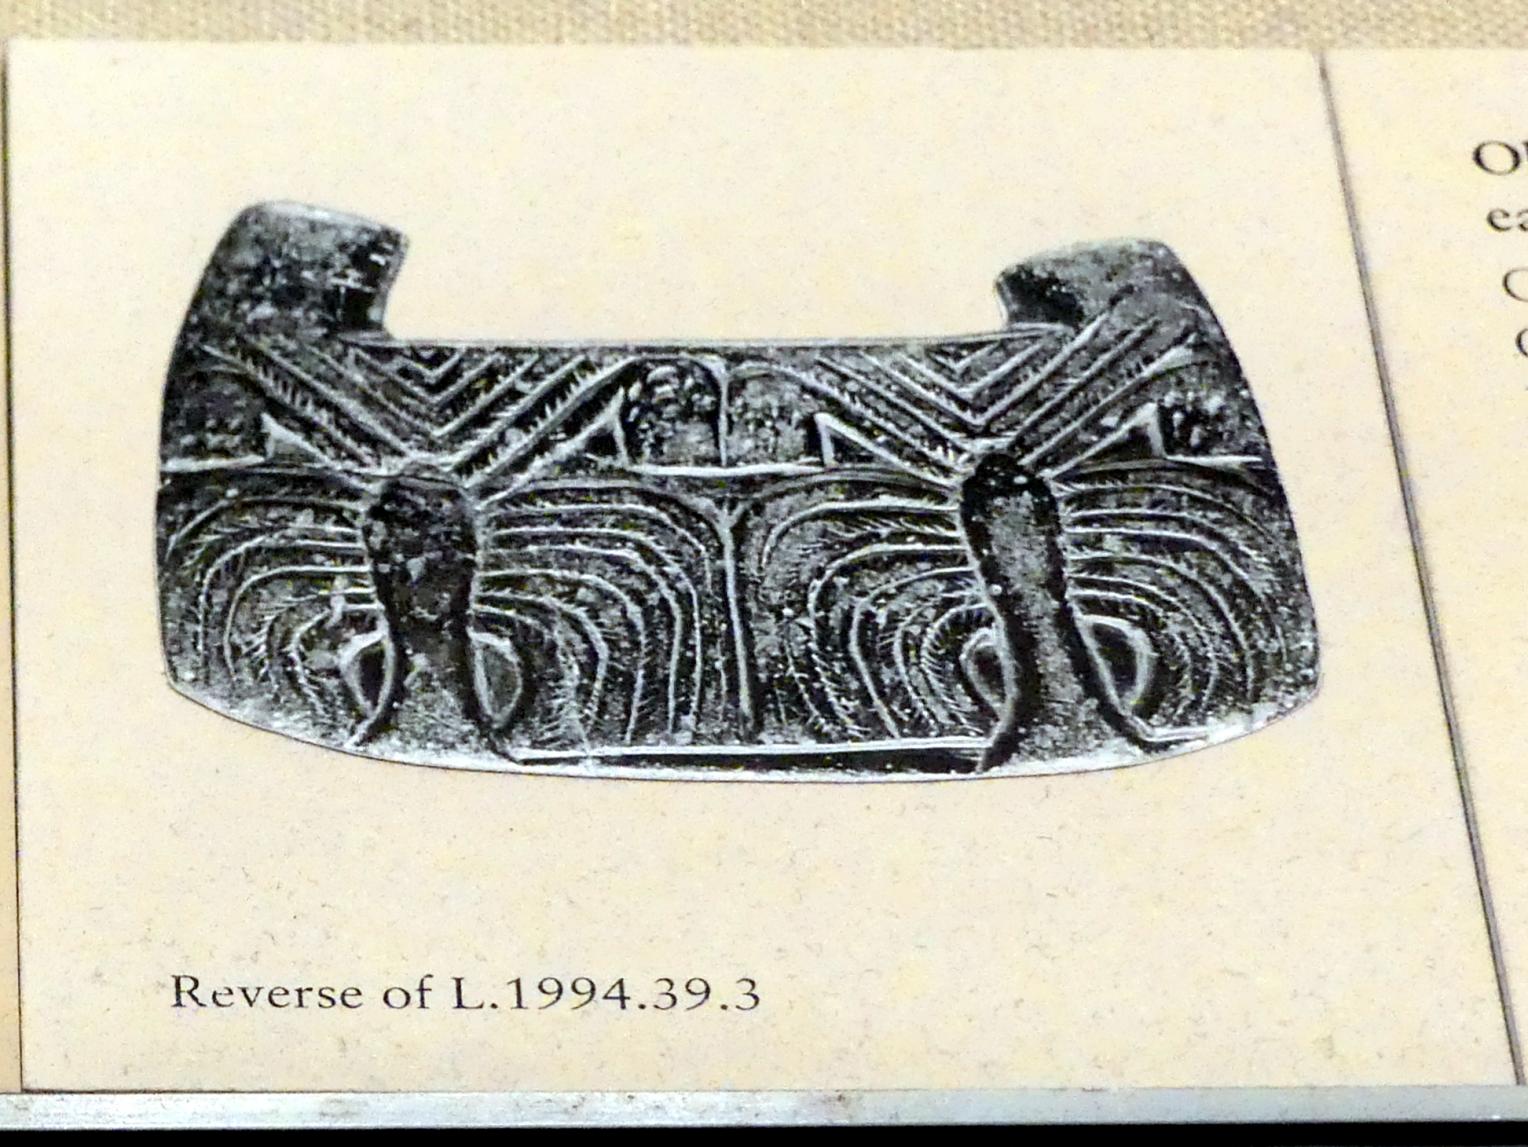 Objekt mit Griff (Gewicht?): Adler und Schlange, Palmen, 2500 - 2100 v. Chr., Bild 2/3